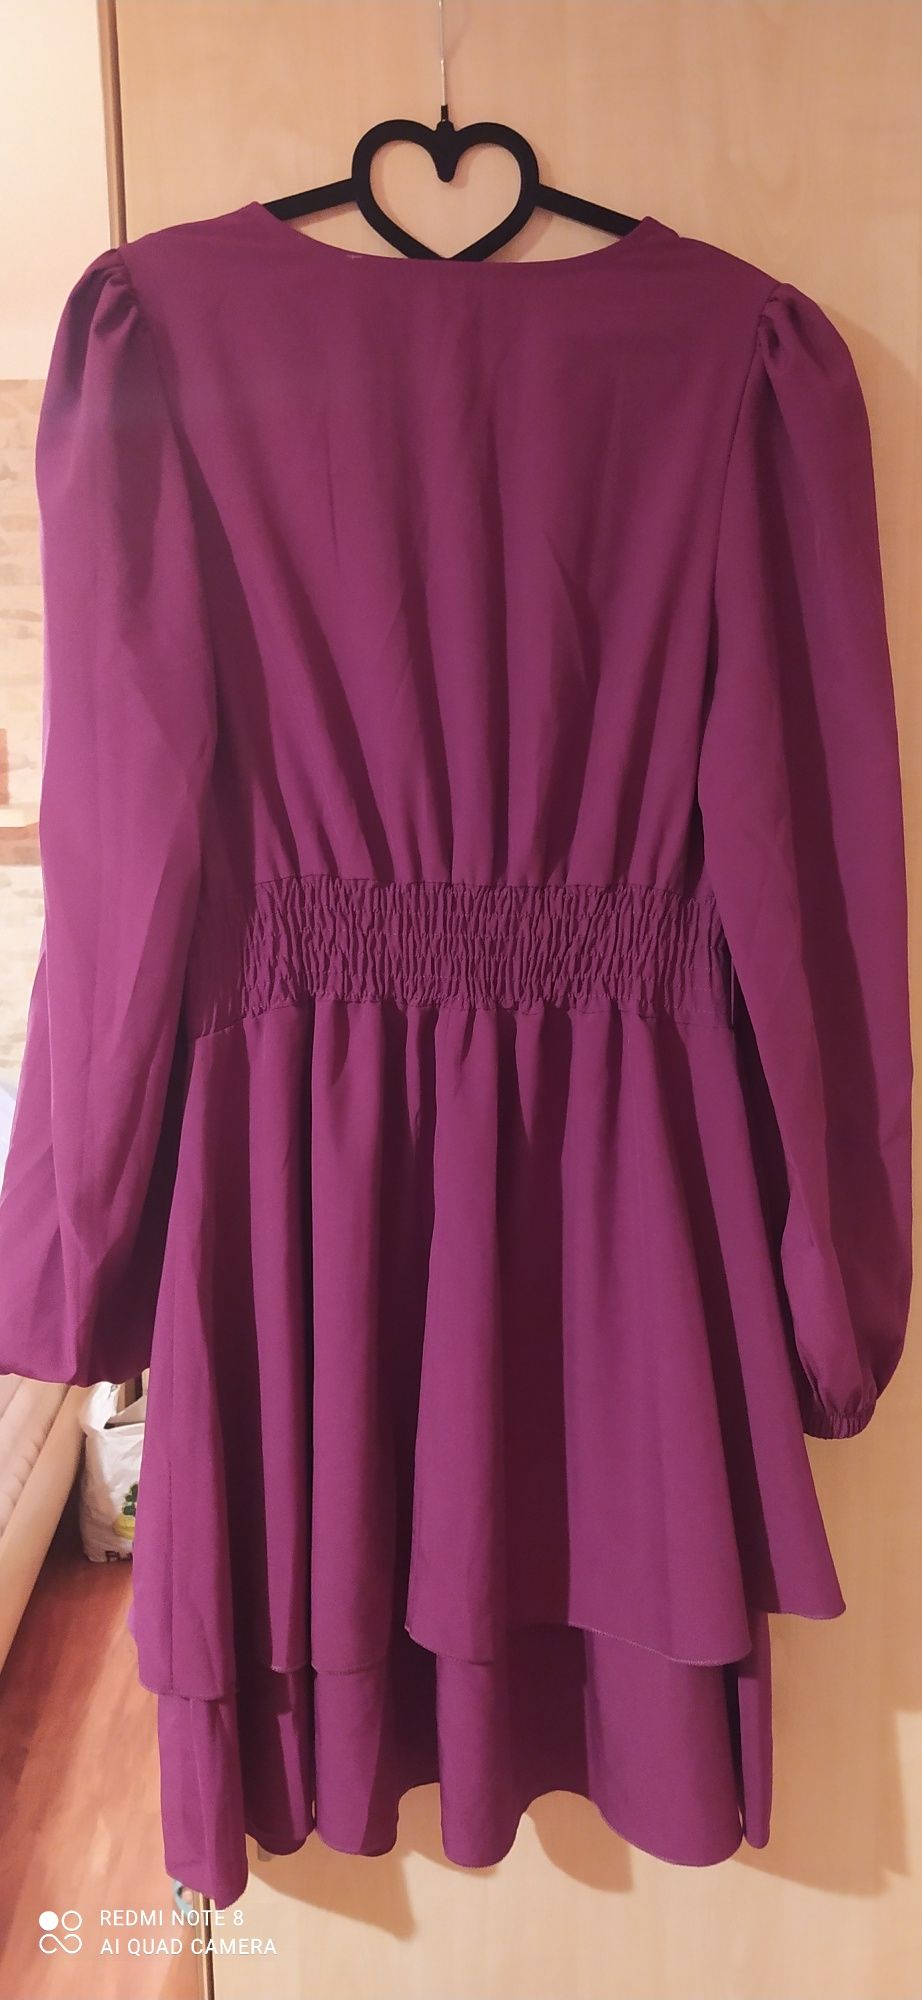 Nowa sukienka włoska, rozmiar uniwersalny M, piękny fiolet